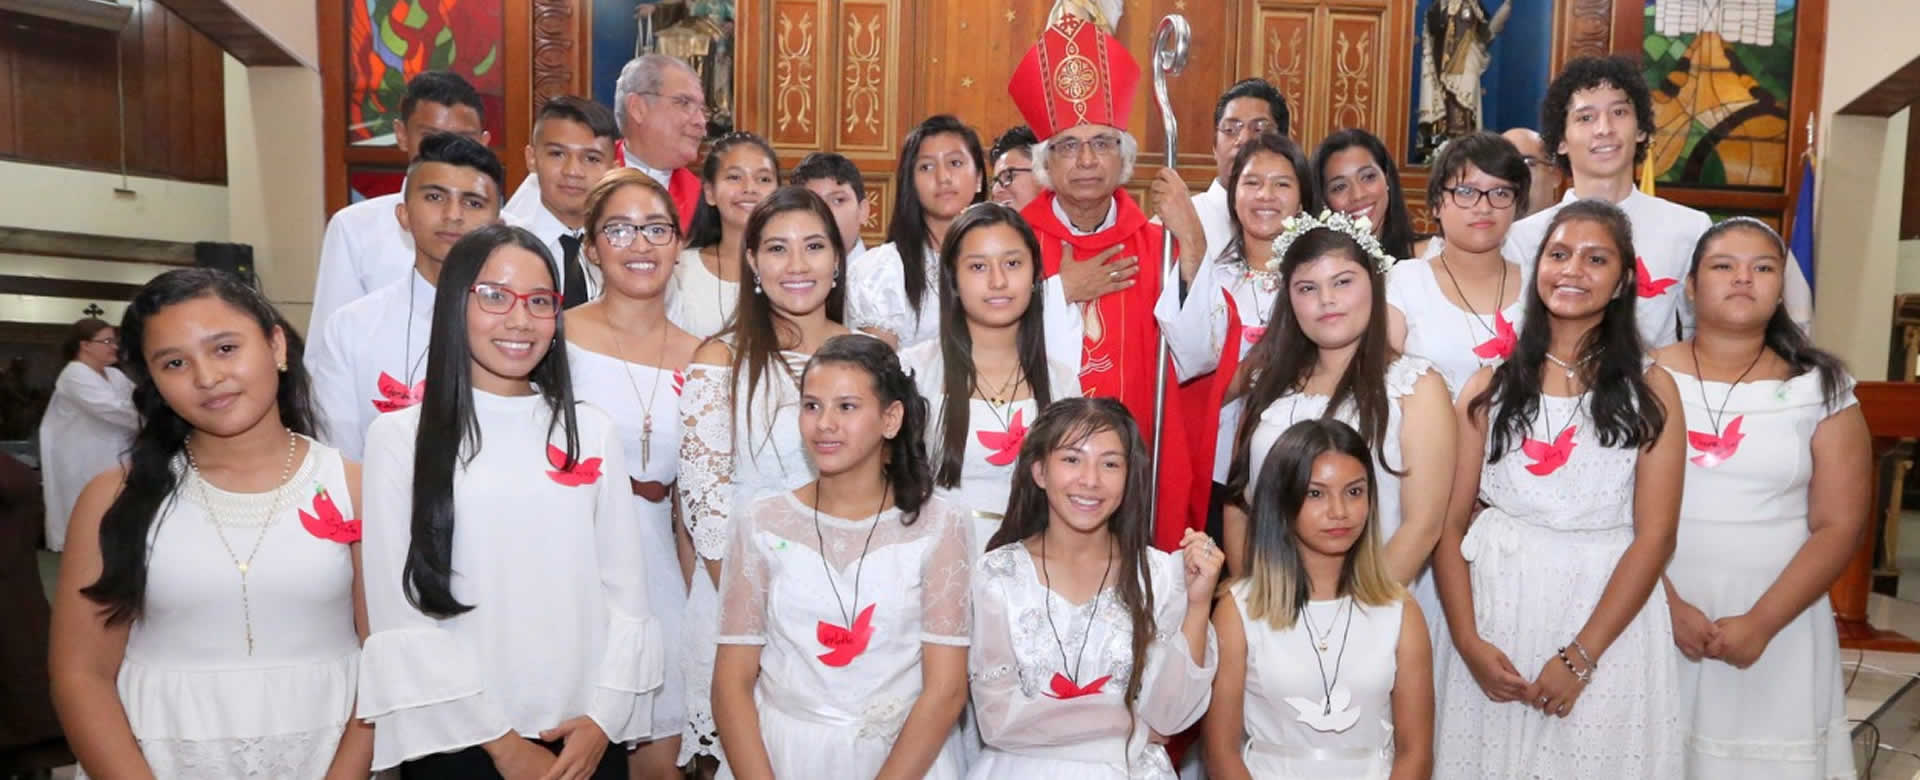 Cardenal Brenes oficia misa en la Parroquia Nuestra Señora del Carmen